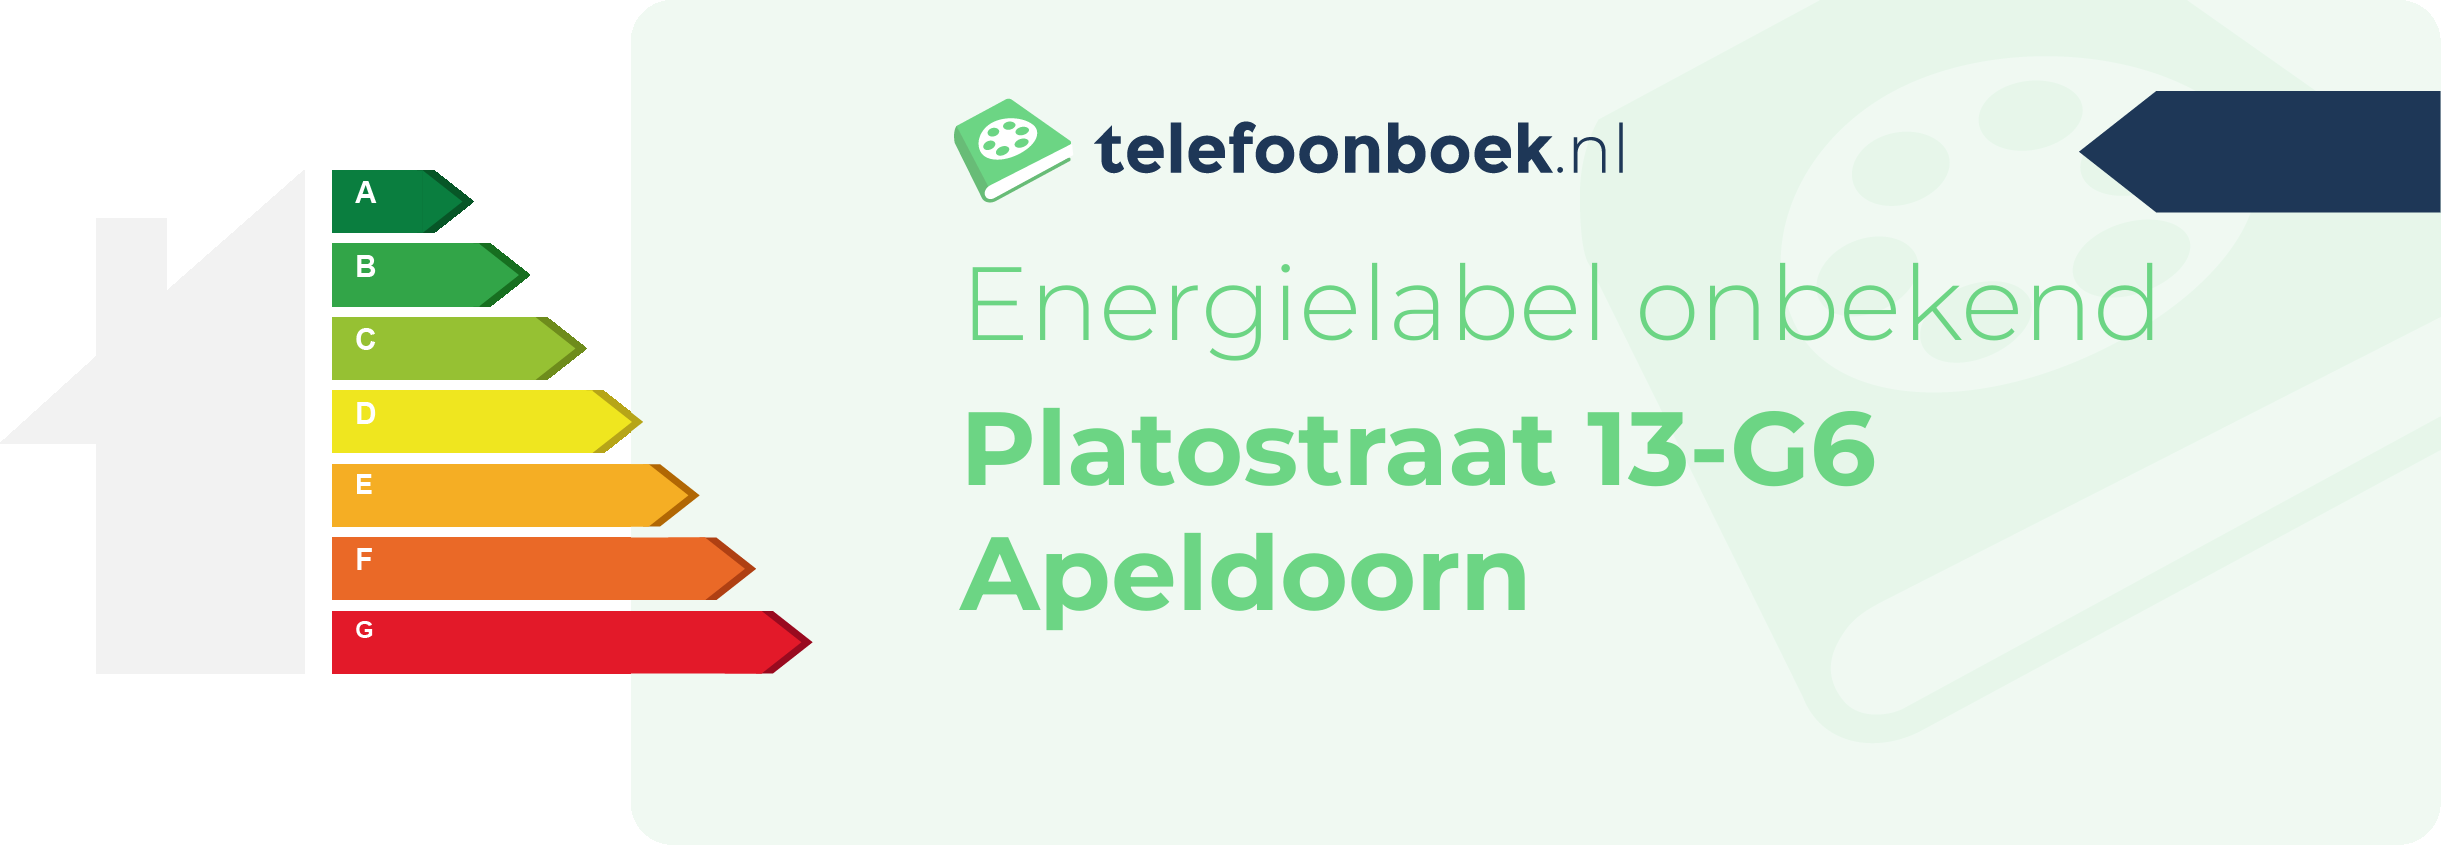 Energielabel Platostraat 13-G6 Apeldoorn